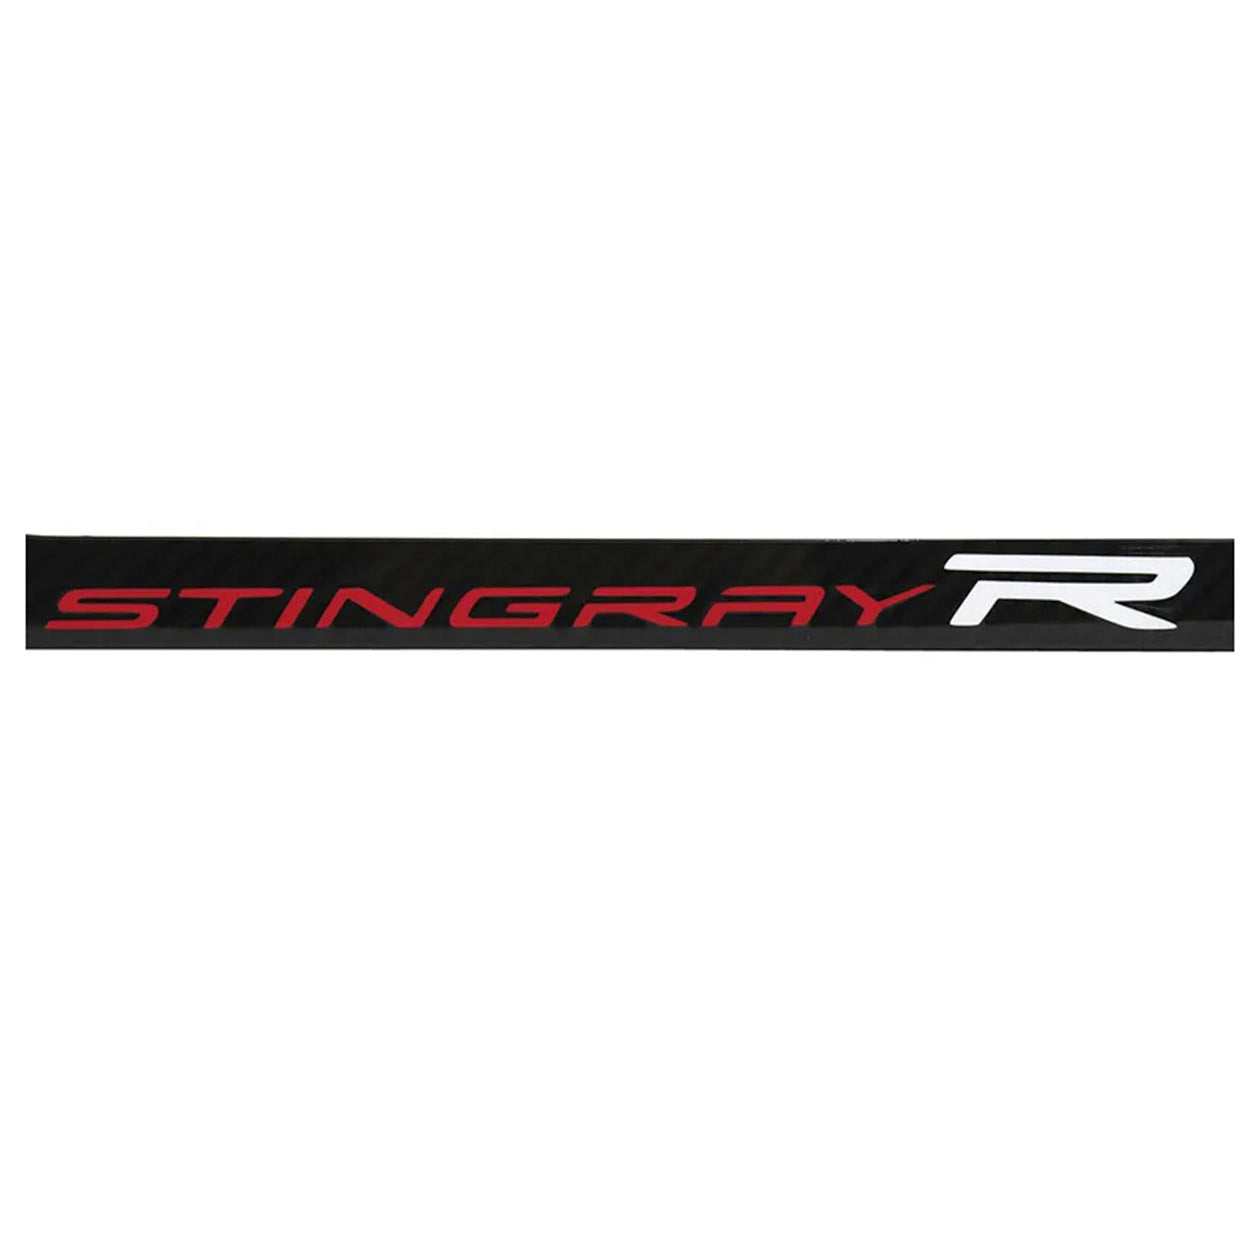 C8 Corvette License Plate Frame - Stingray R Logo